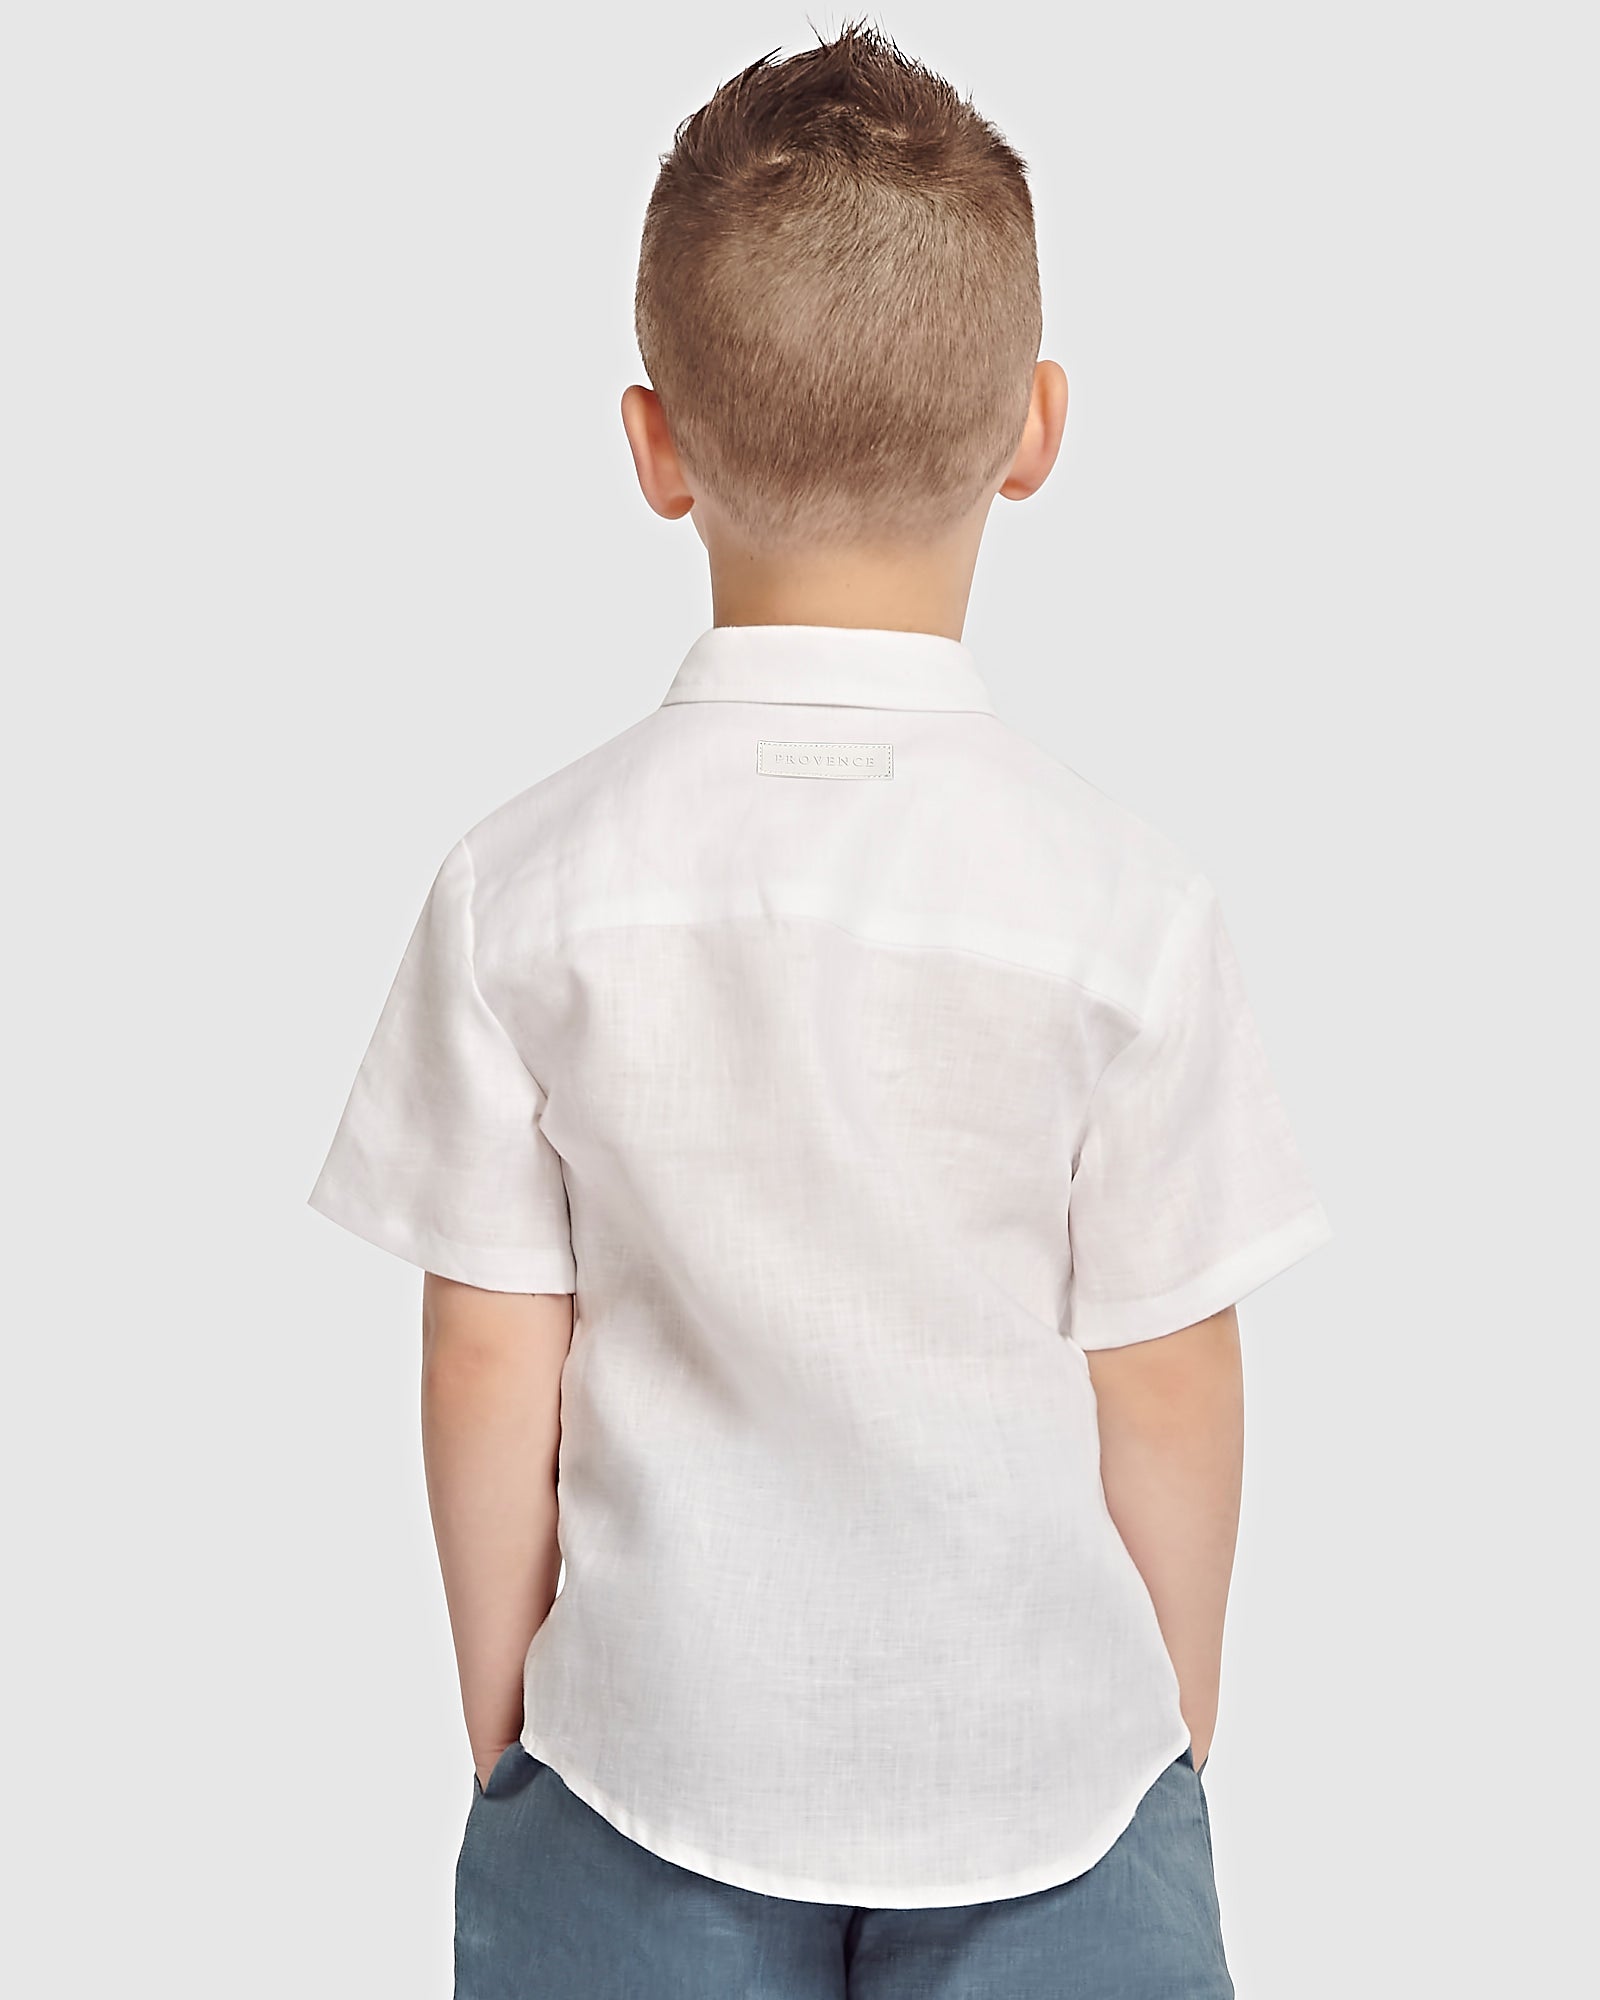 Kids Linen Shortsleeve Shirt